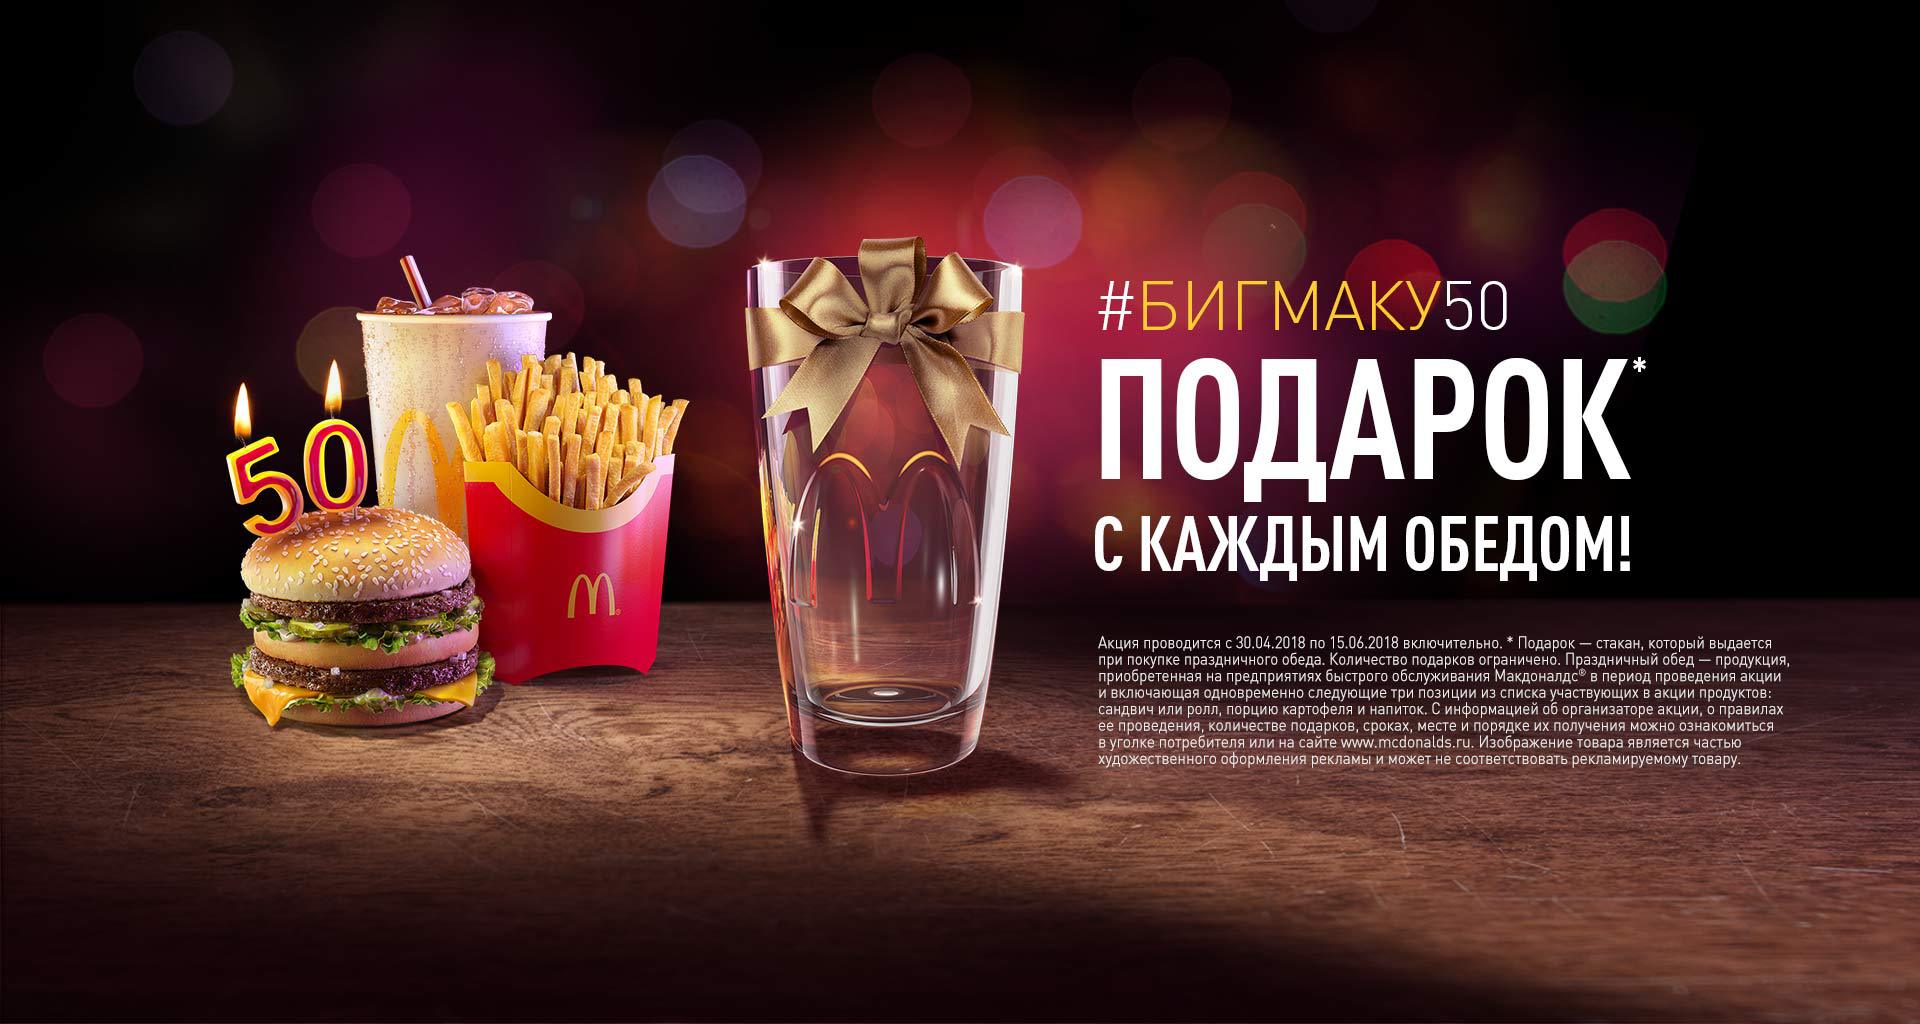 Рекламная акция Макдоналдс (McDonald's) «Биг Маку 50. Фирменный стакан с каждым обедом»